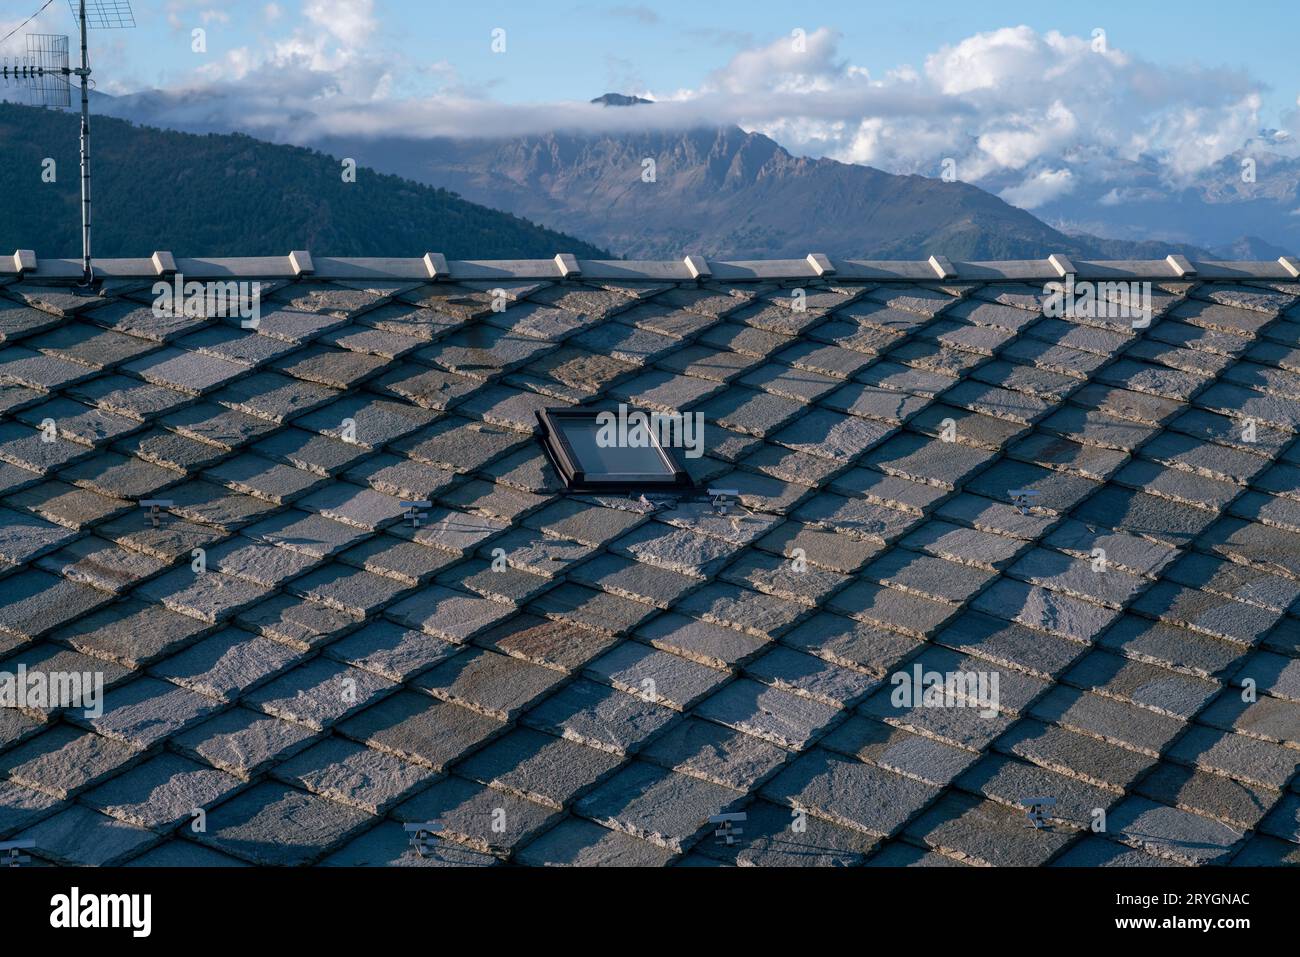 tetto con piastrelle di pietra, tipico delle case di montagna, pietre di granito grigio blu, montagne sullo sfondo. isolamento termico, classe energetica. Foto Stock